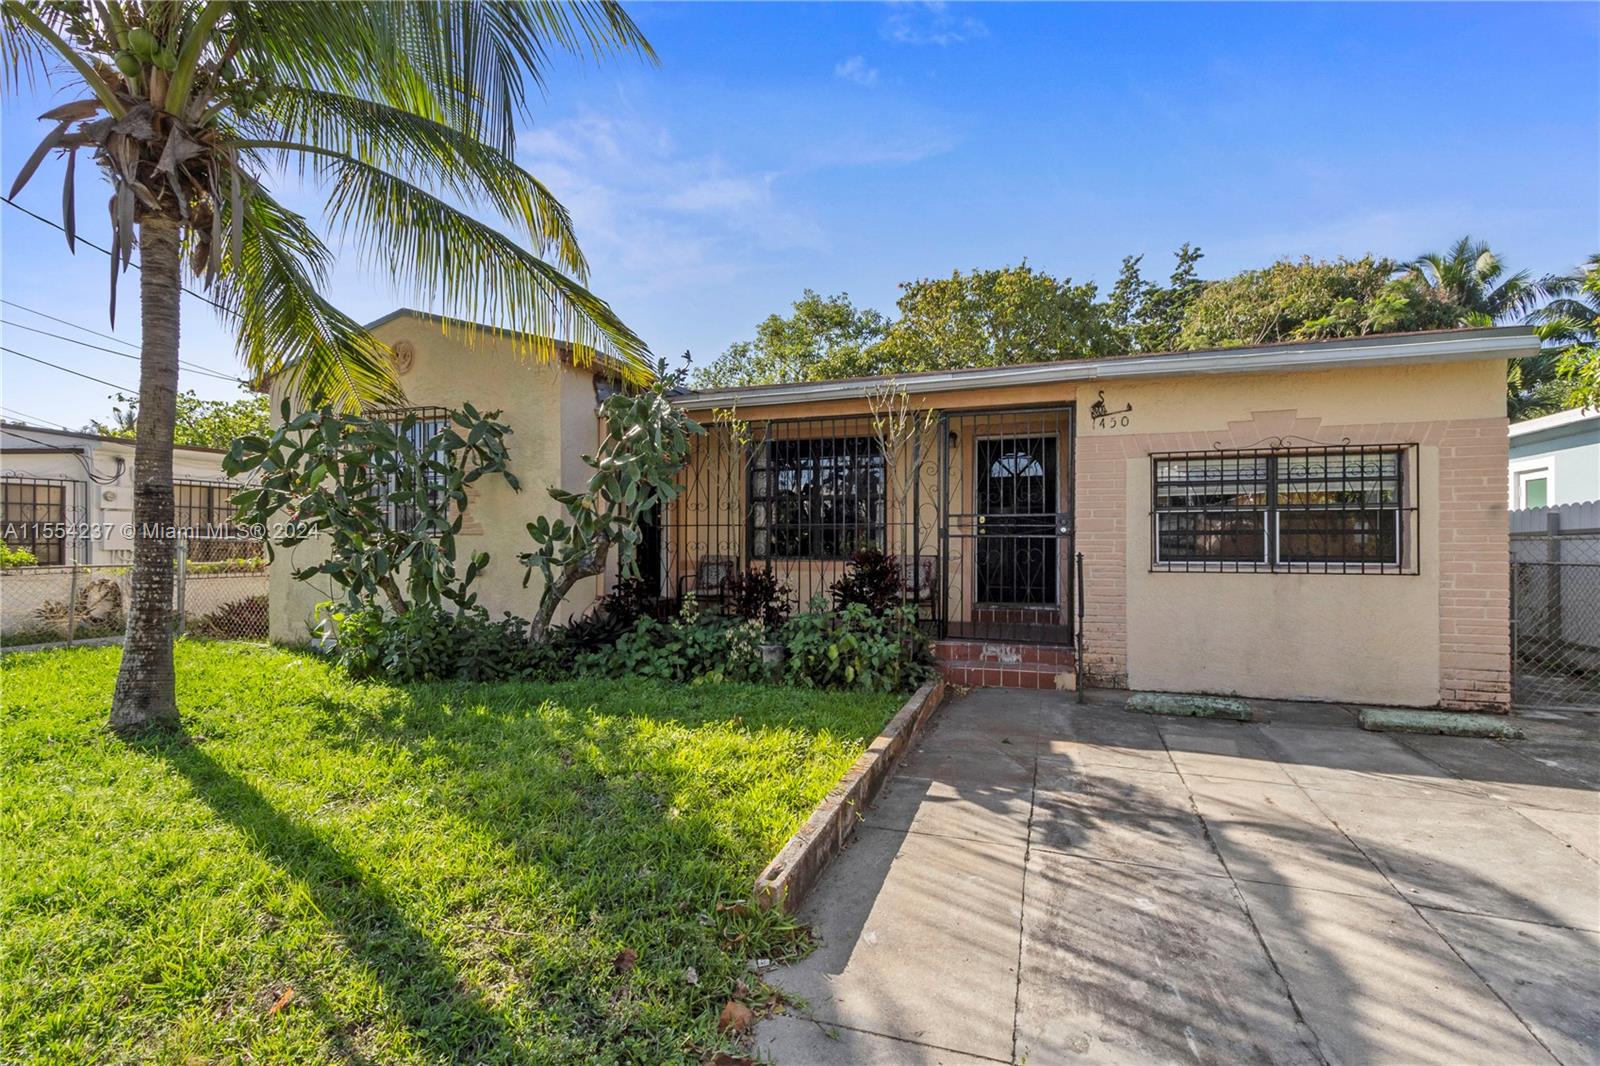 Rental Property at 1450 Nw 35th St St, Miami, Broward County, Florida -  - $620,000 MO.